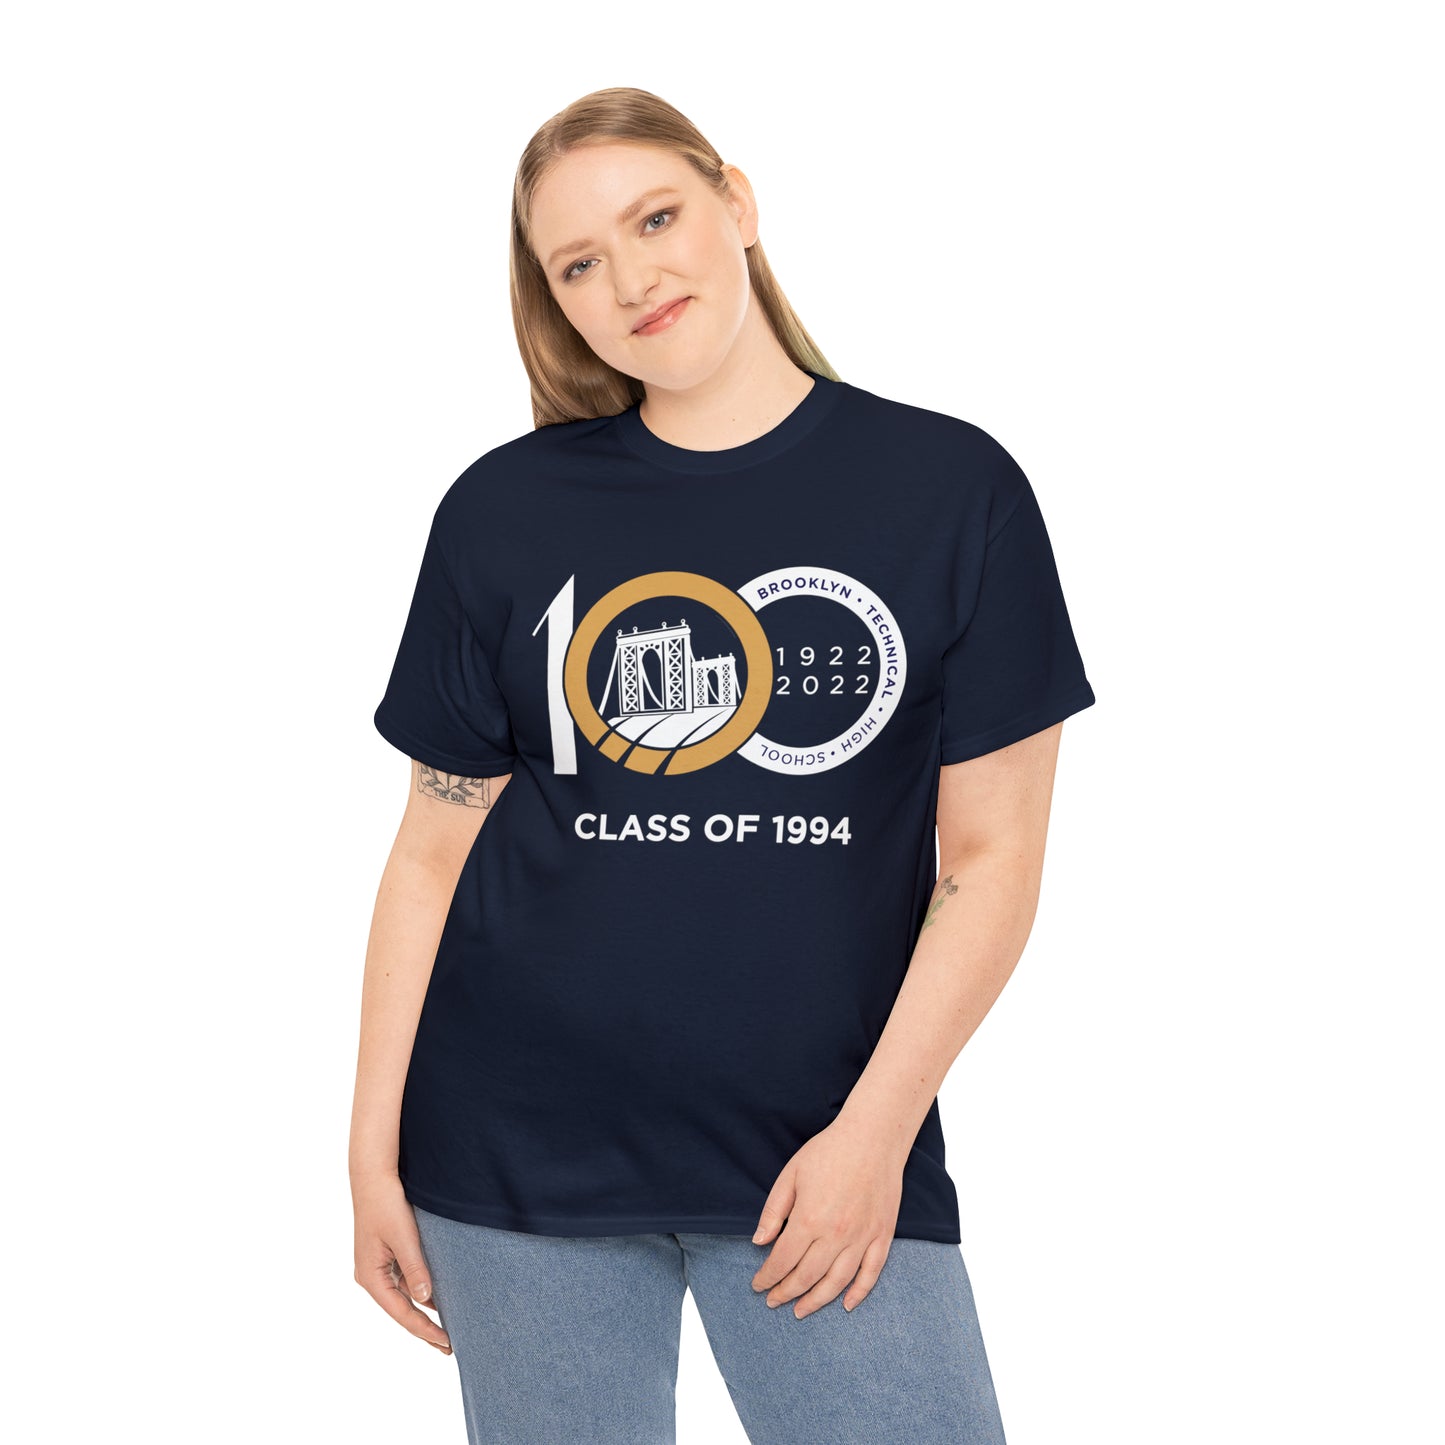 Centennial - Men's Heavy Cotton T-Shirt - Class Of 1994